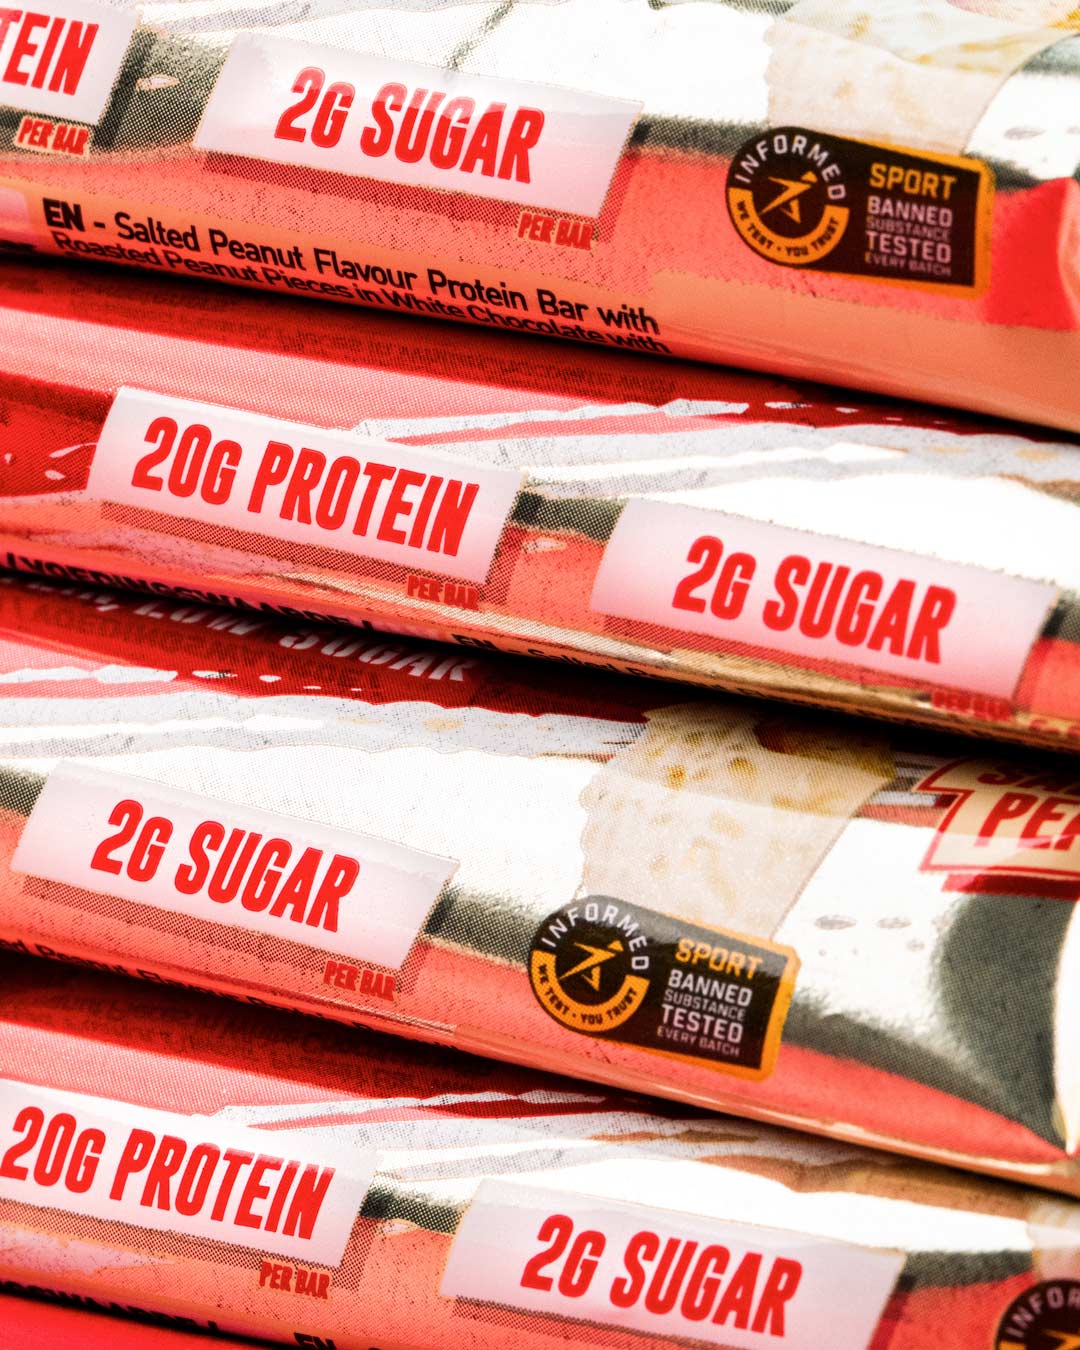 20g Protein, 2g Sugar in Salted peanut protein bar